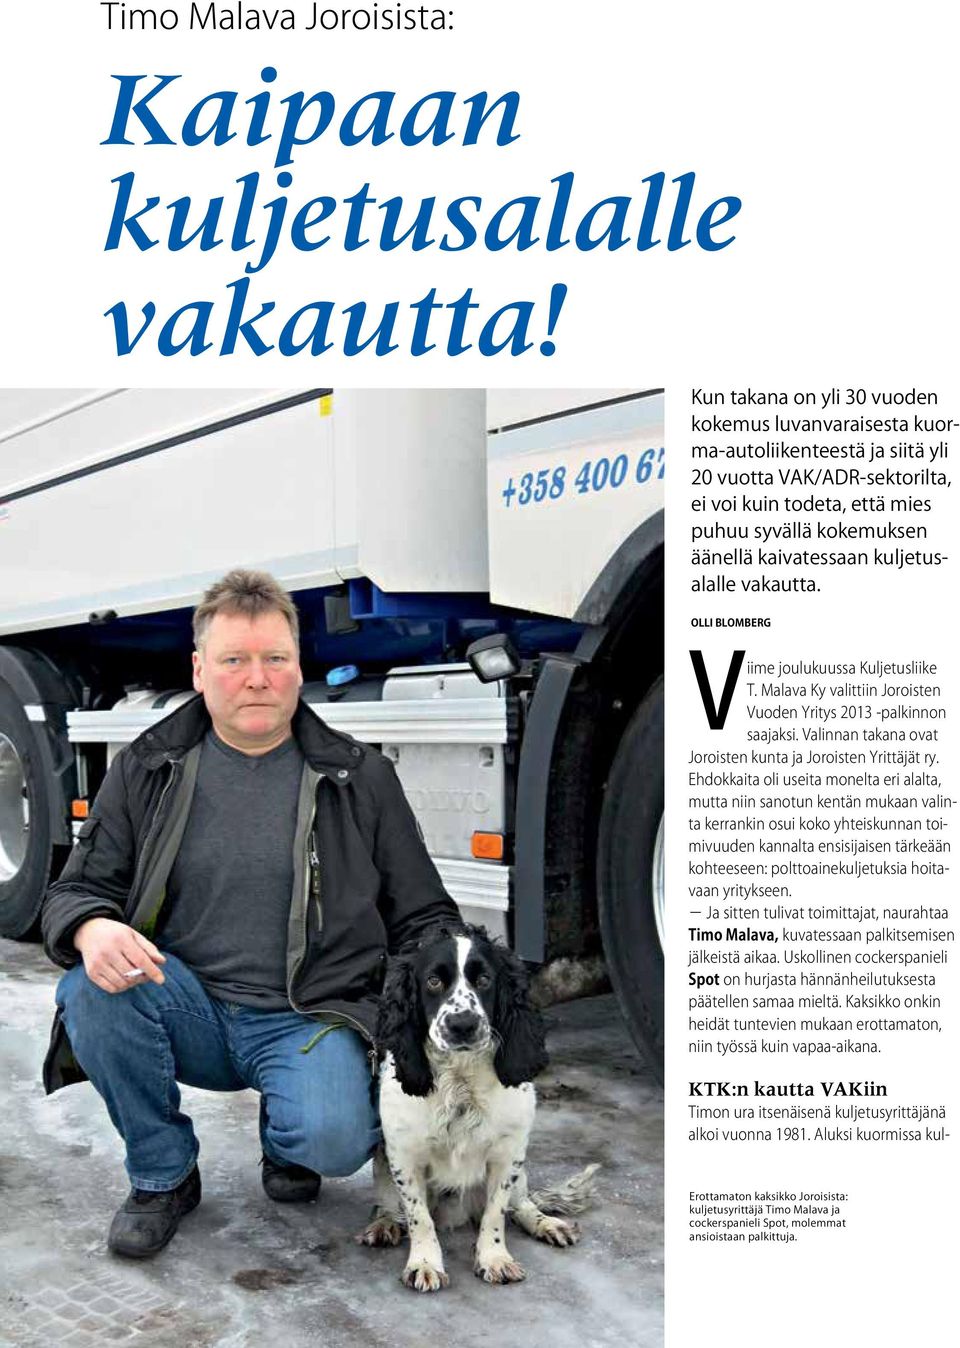 kuljetusalalle vakautta. Olli Blomberg Viime joulukuussa Kuljetusliike T. Malava Ky valittiin Joroisten Vuoden Yritys 2013 -palkinnon saajaksi.